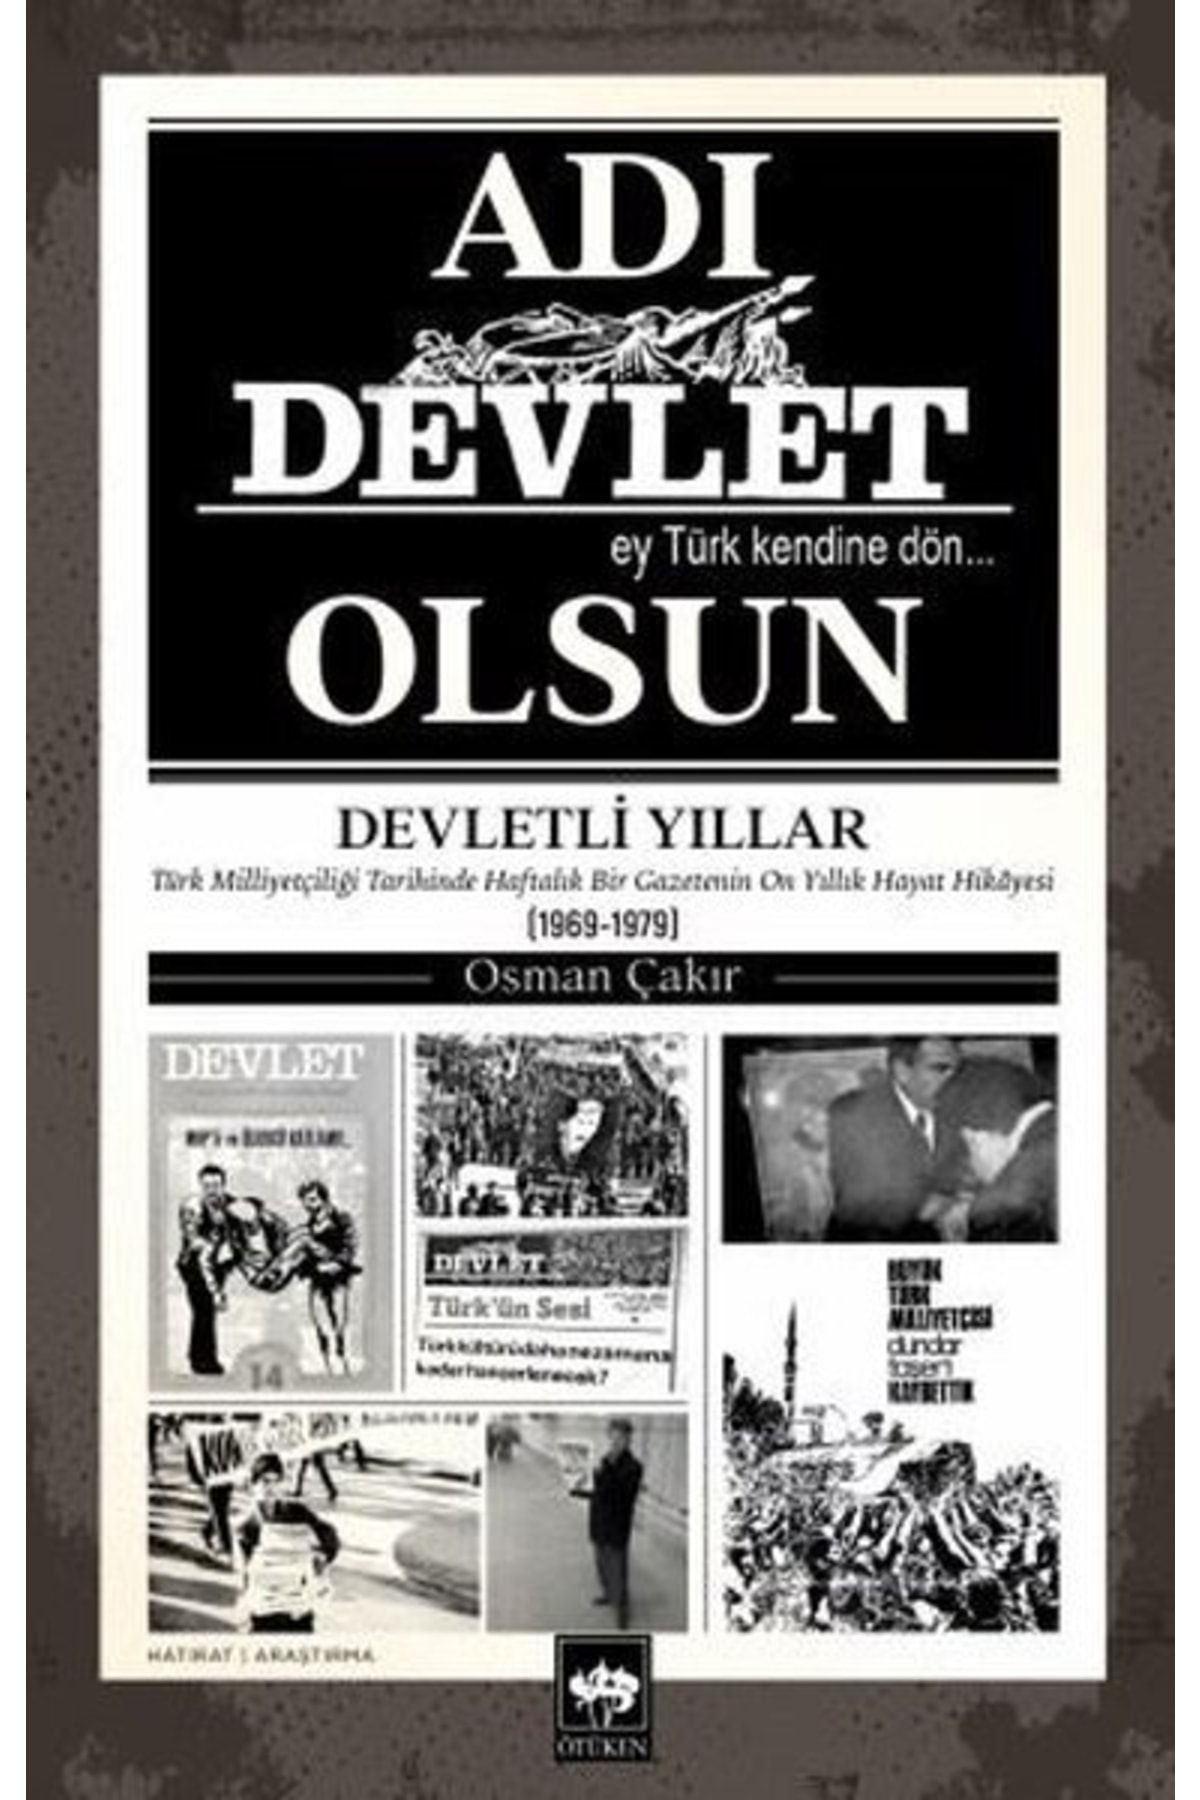 Ötüken Neşriyat Adı Devlet Olsun - Türk Milliyetçiliği Tarihinde Haftalık Bir Gazetenin On Yıllık Hayat Hikayesi